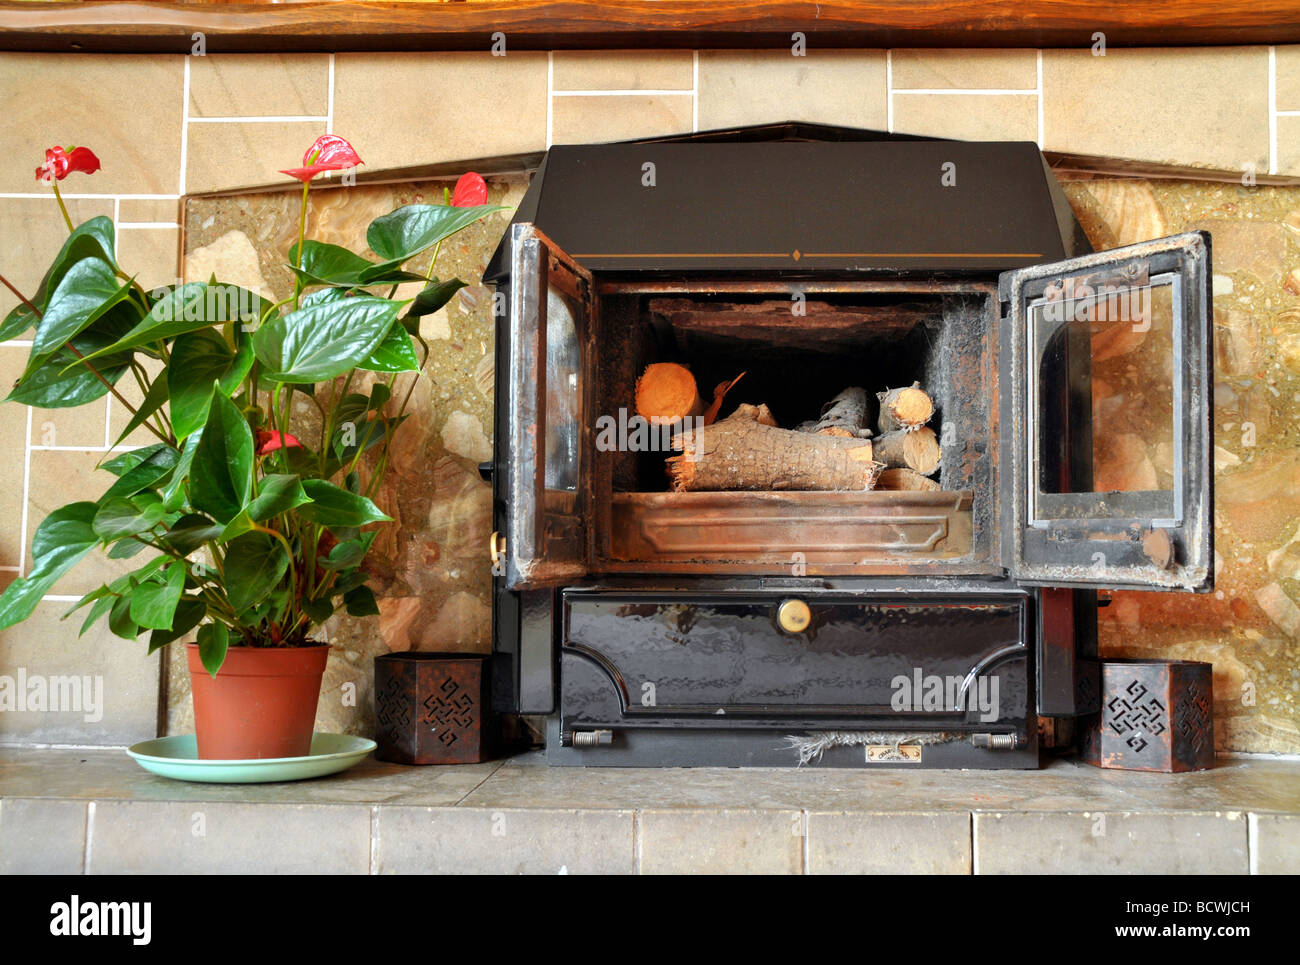 Un spento aprire doored il posto del fuoco in un lounge, con una pianta in vaso in prossimità di essa. Foto Stock